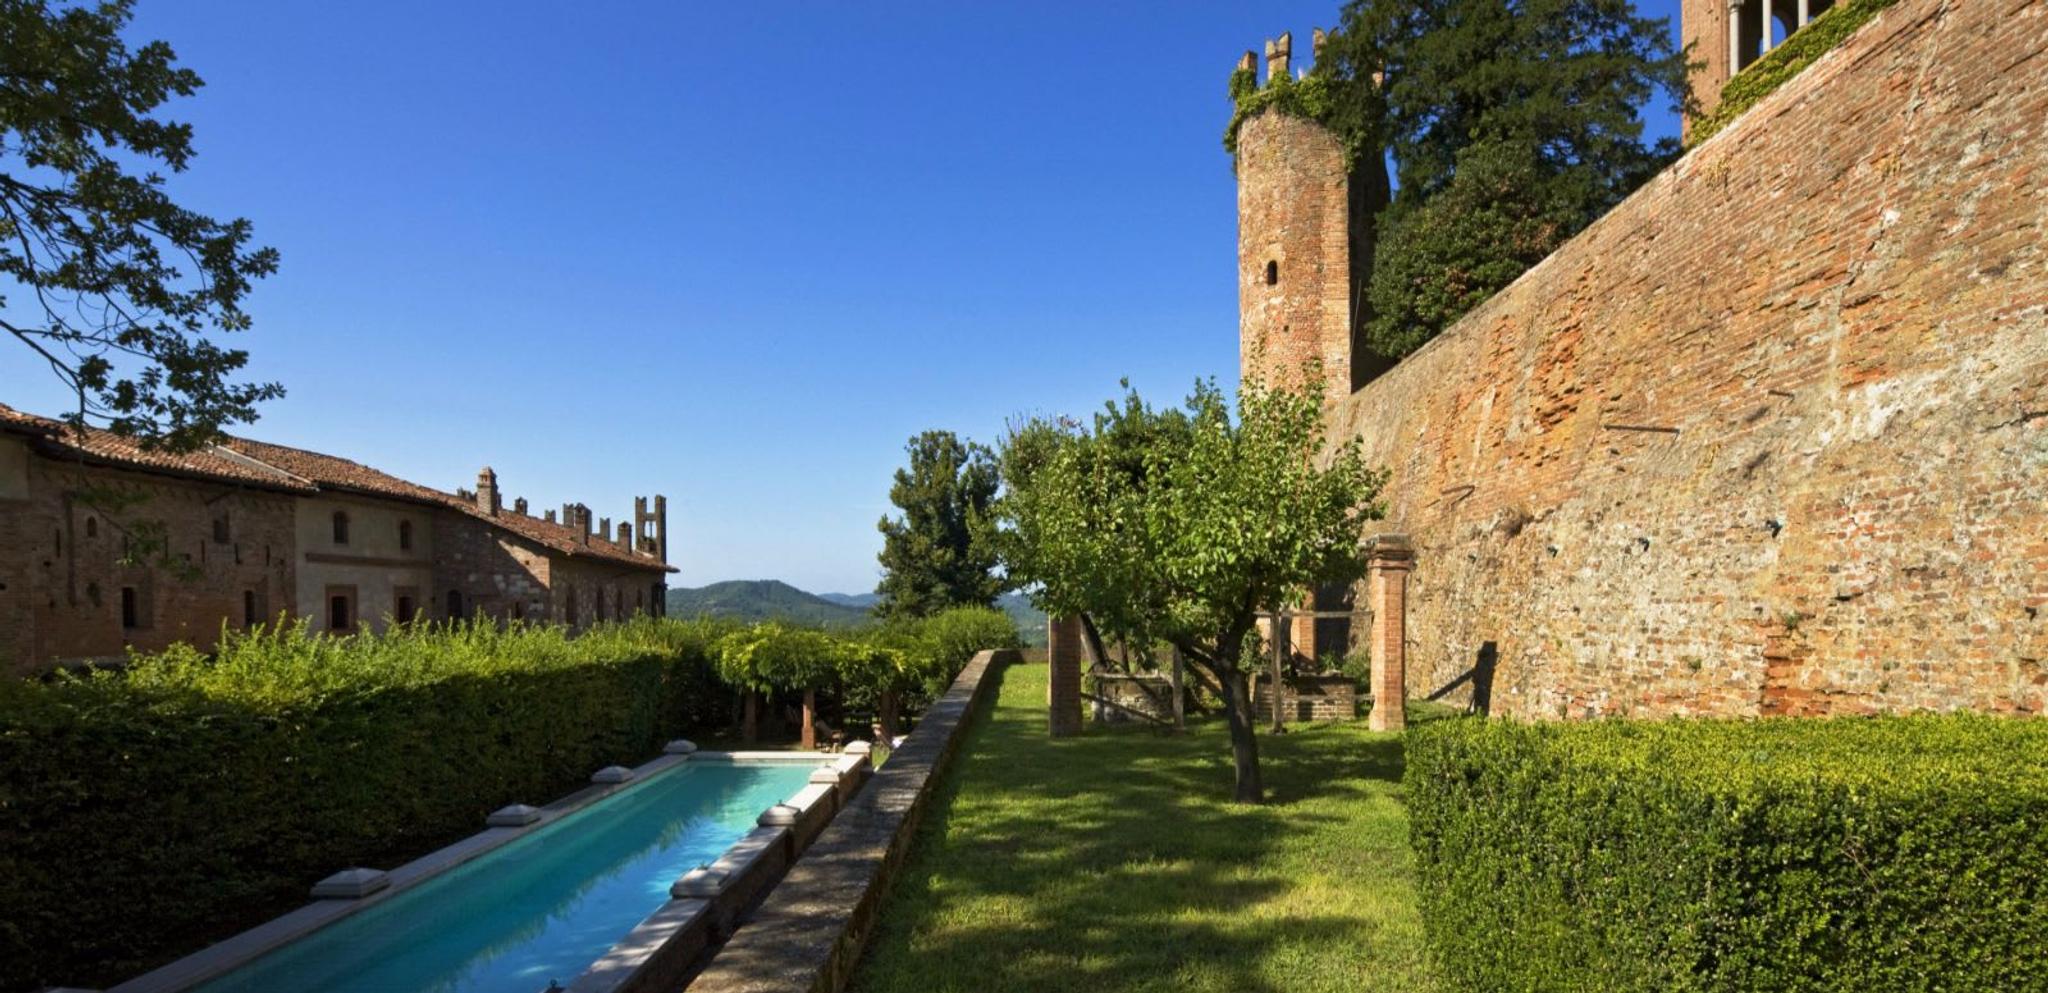 Castello di Gabiano giardino medievale ed elegante piscina privata